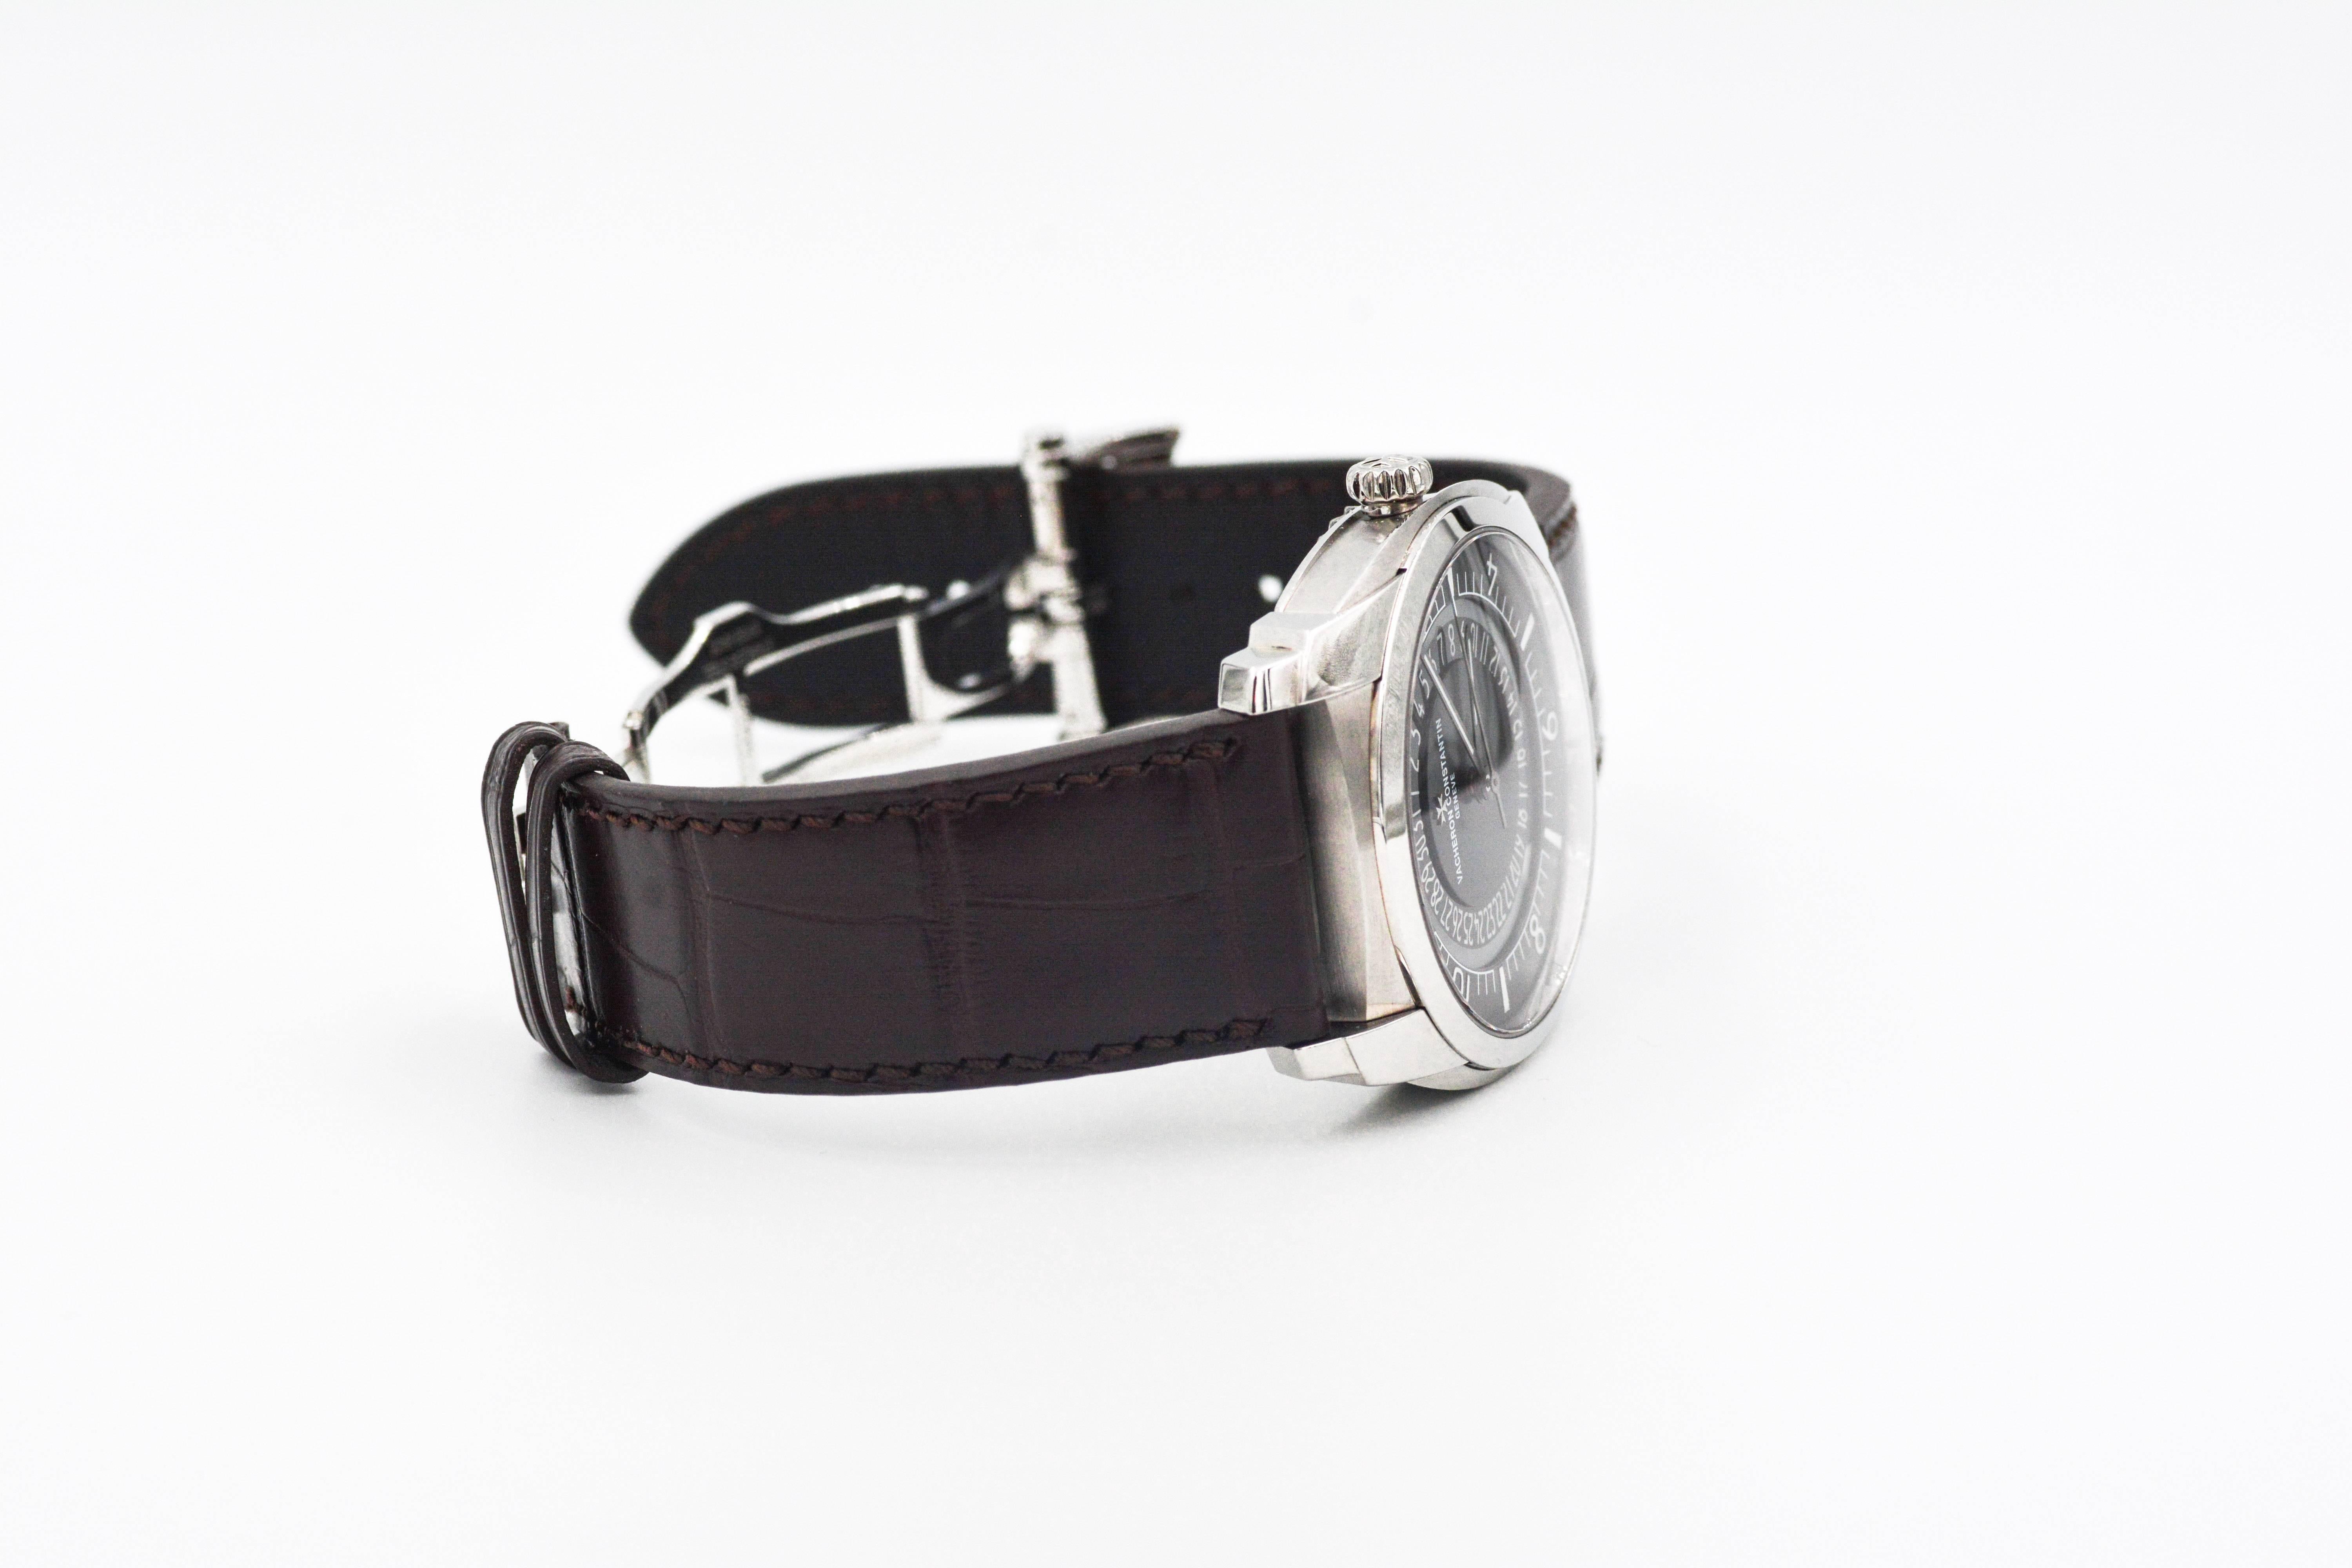 Vacheron Constantin Stainless Steel Quai De L'ile Automatic Wristwatch  3